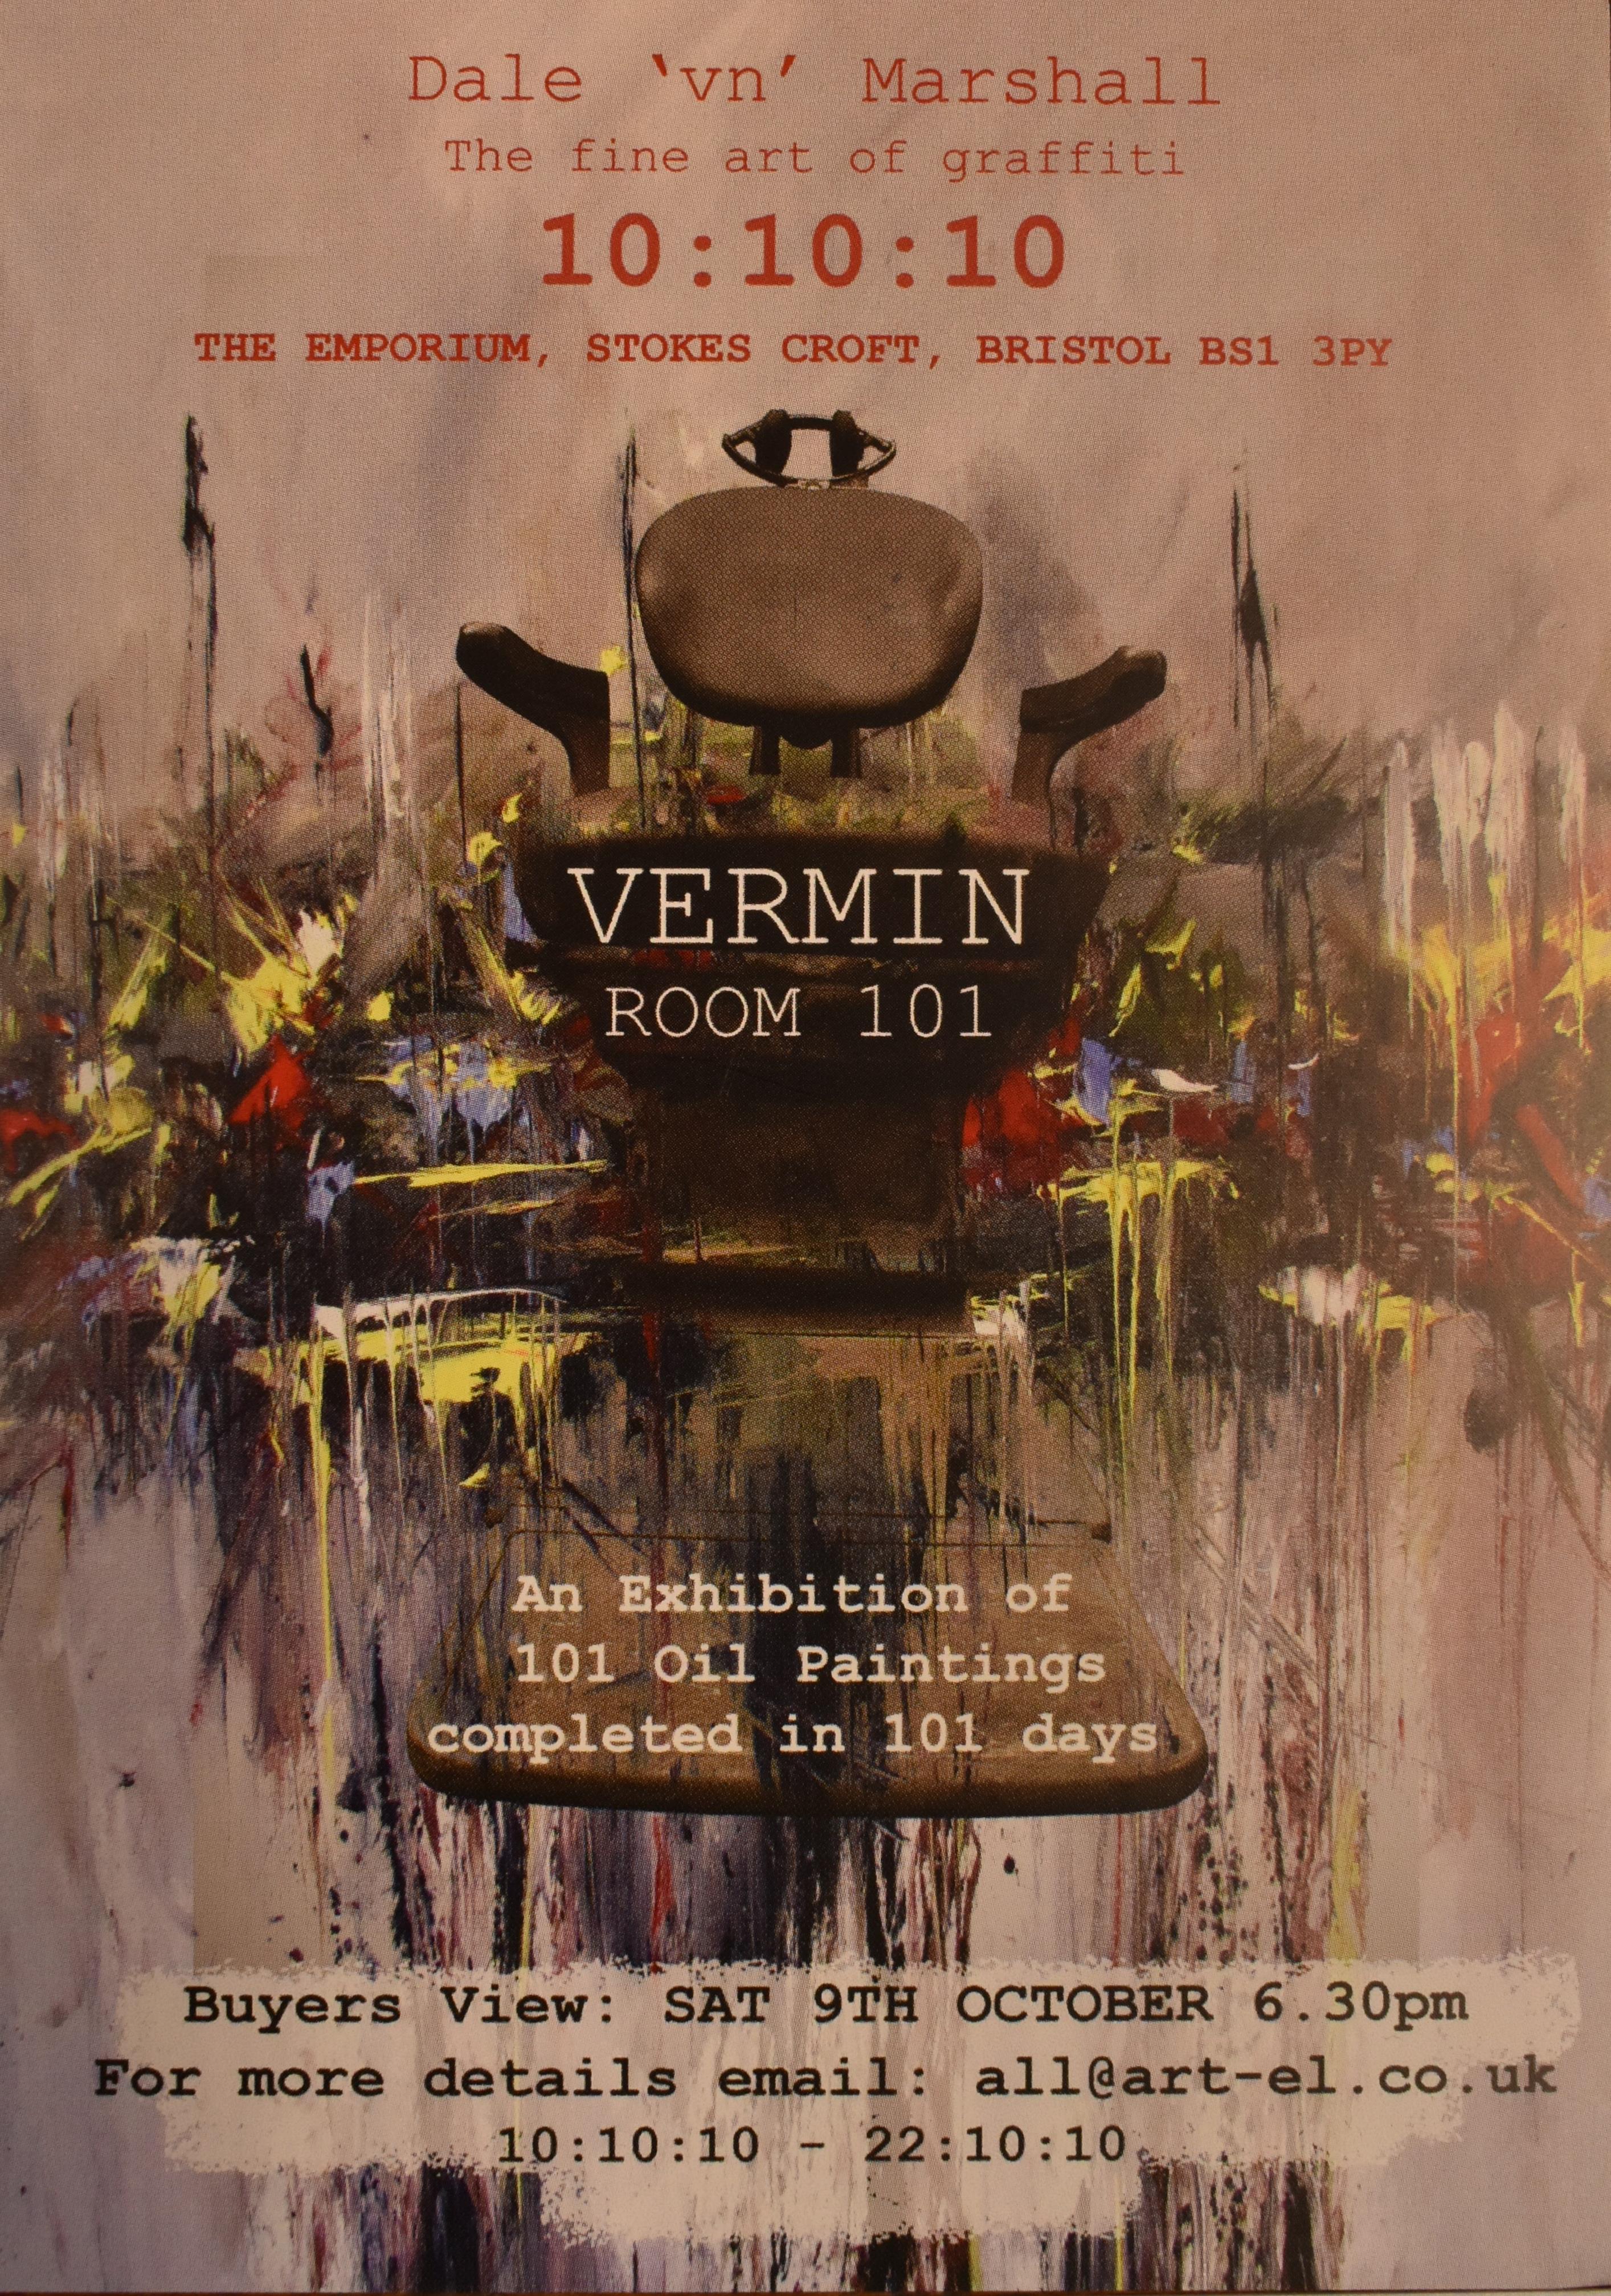 DALE COLOLINS AKA VERMIN- THE FINE ART OF GRAFFITI - Image 2 of 6